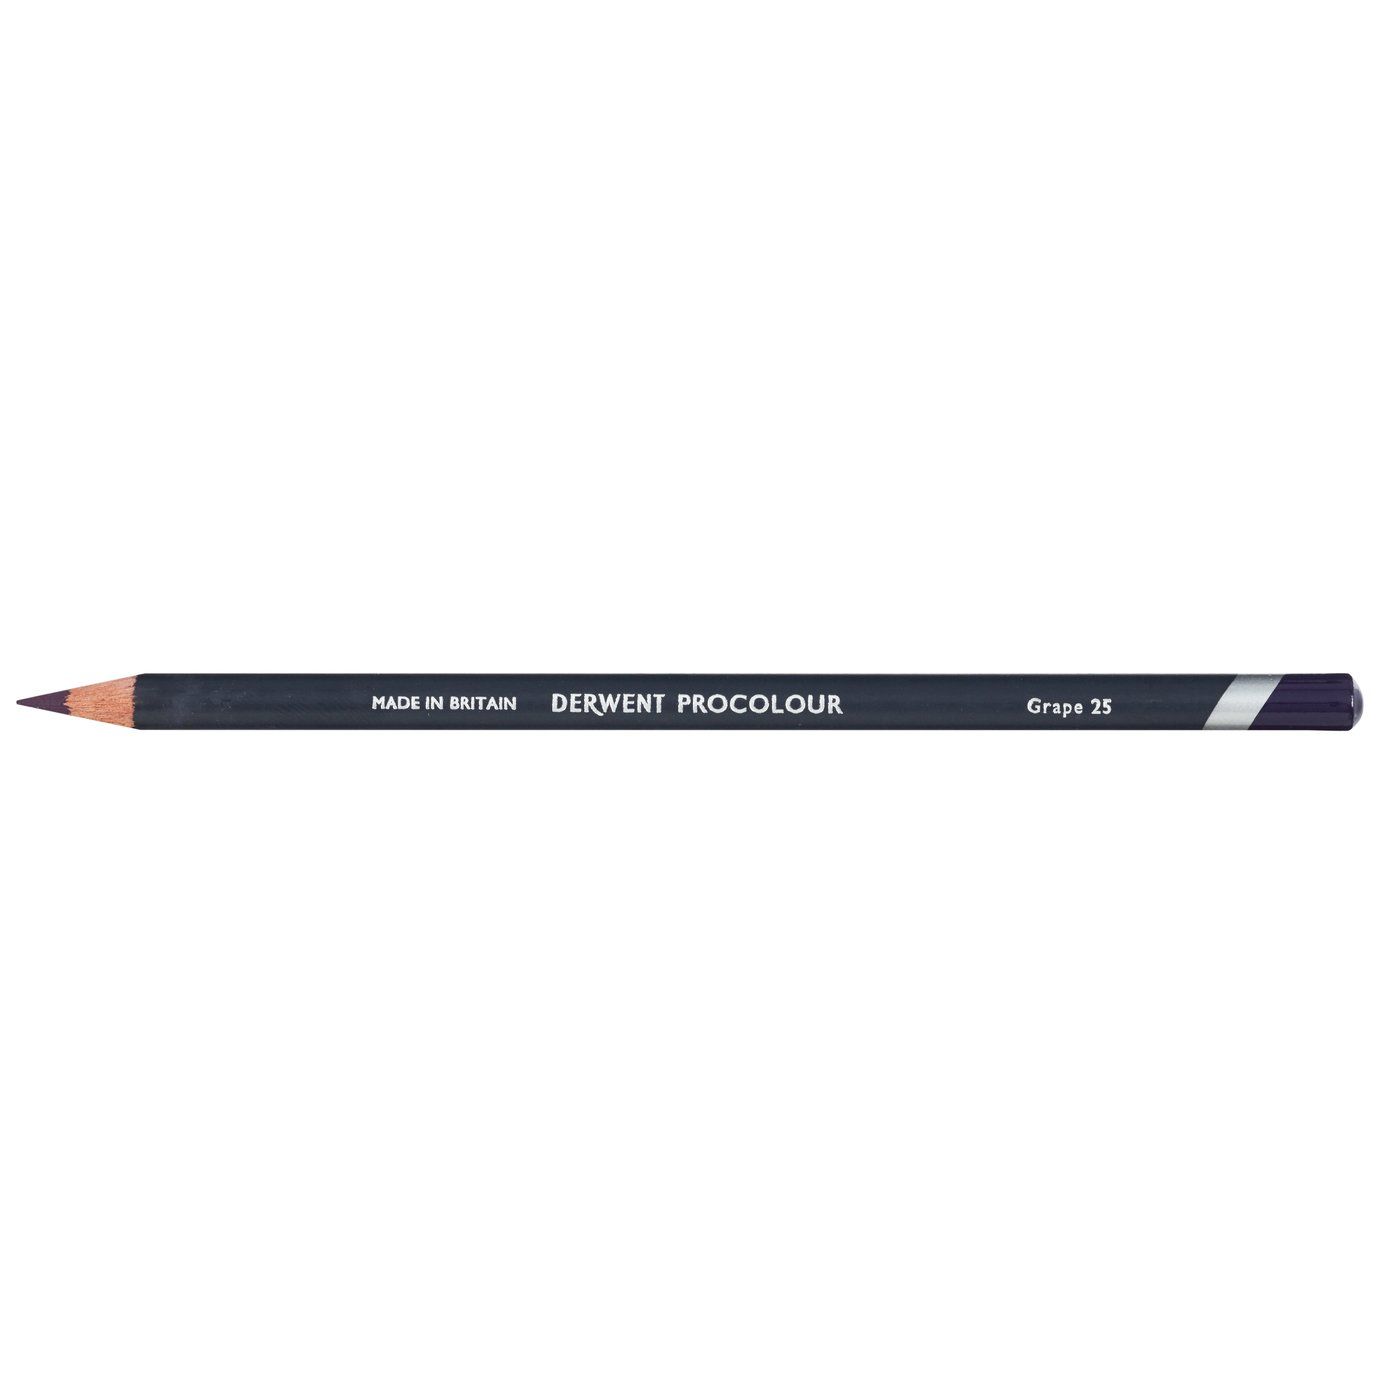 Derwent Procolour Pencil - 25 Grape